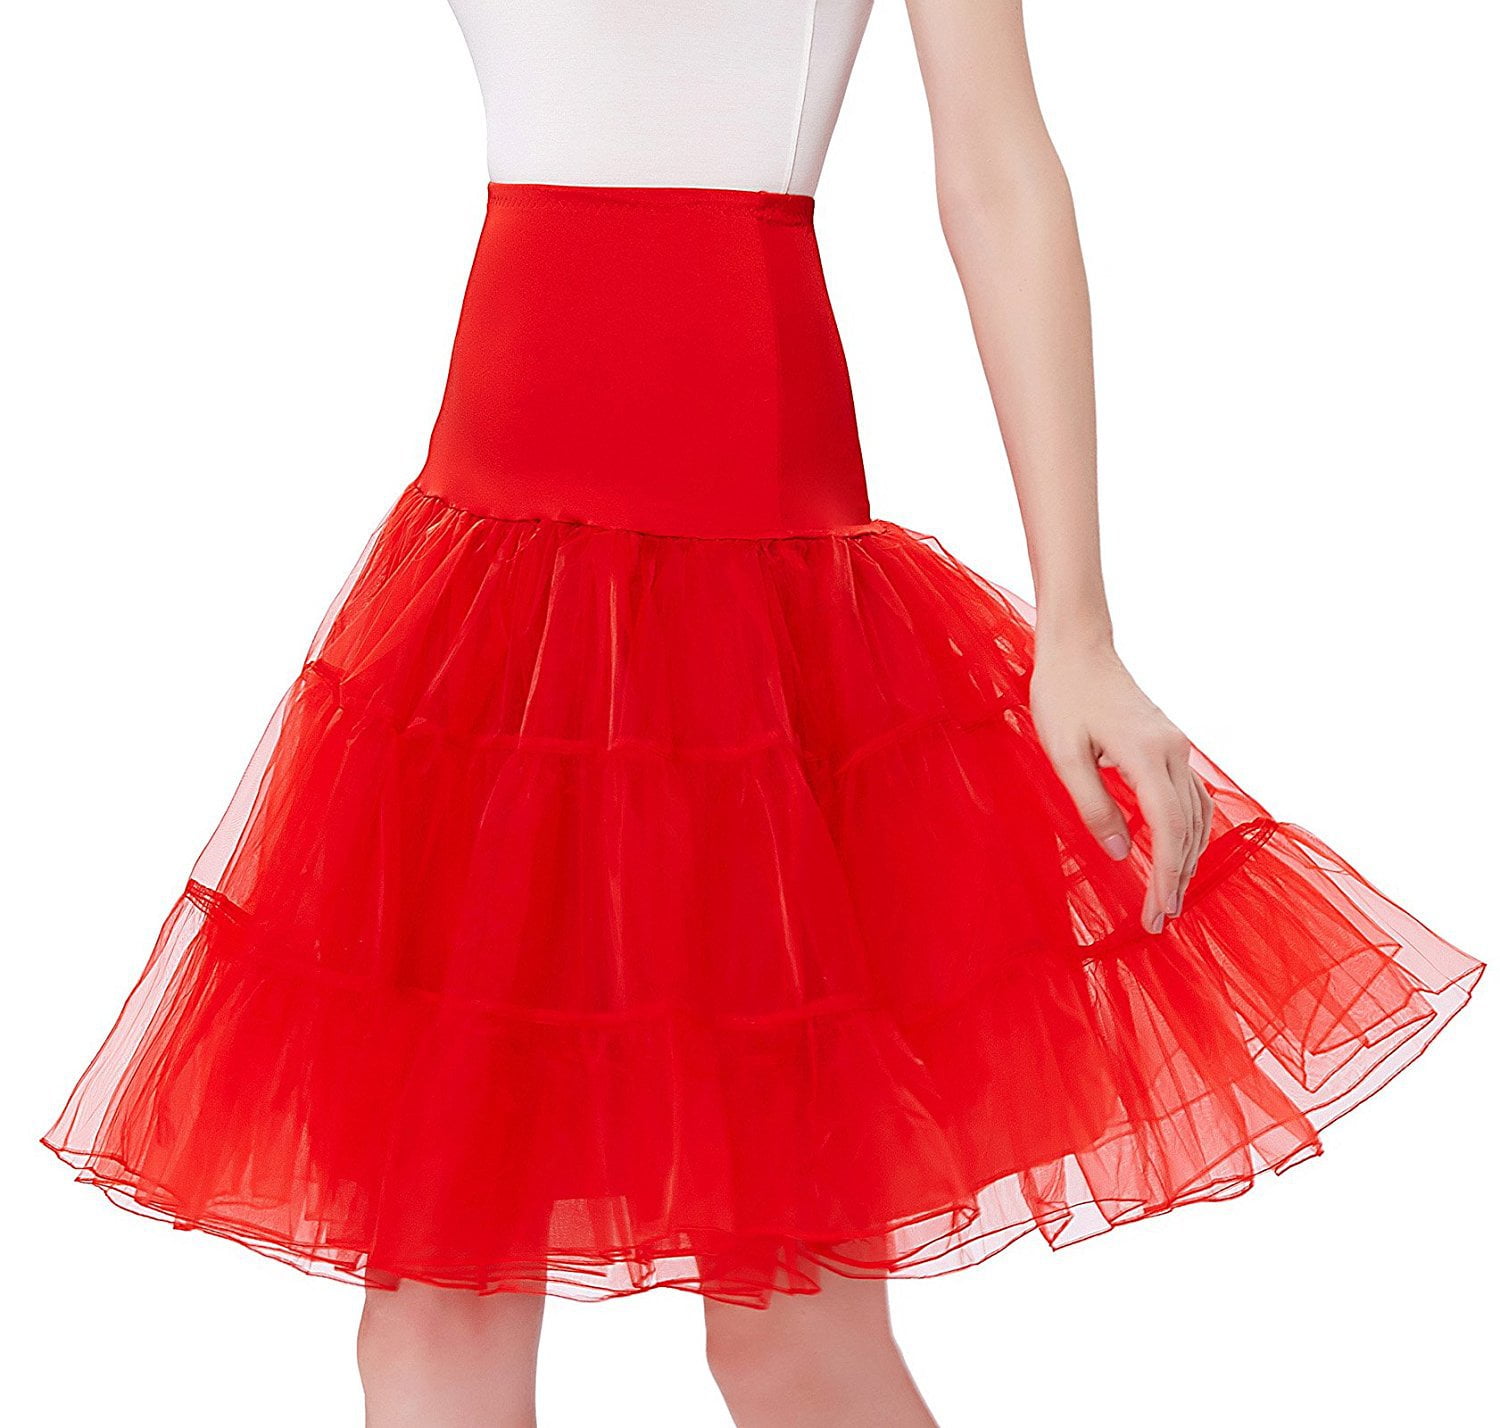 Hot 26" Vintage Petticoat Crinoline Underskirt Fancy Skirt Slips 50s Tutu dress 